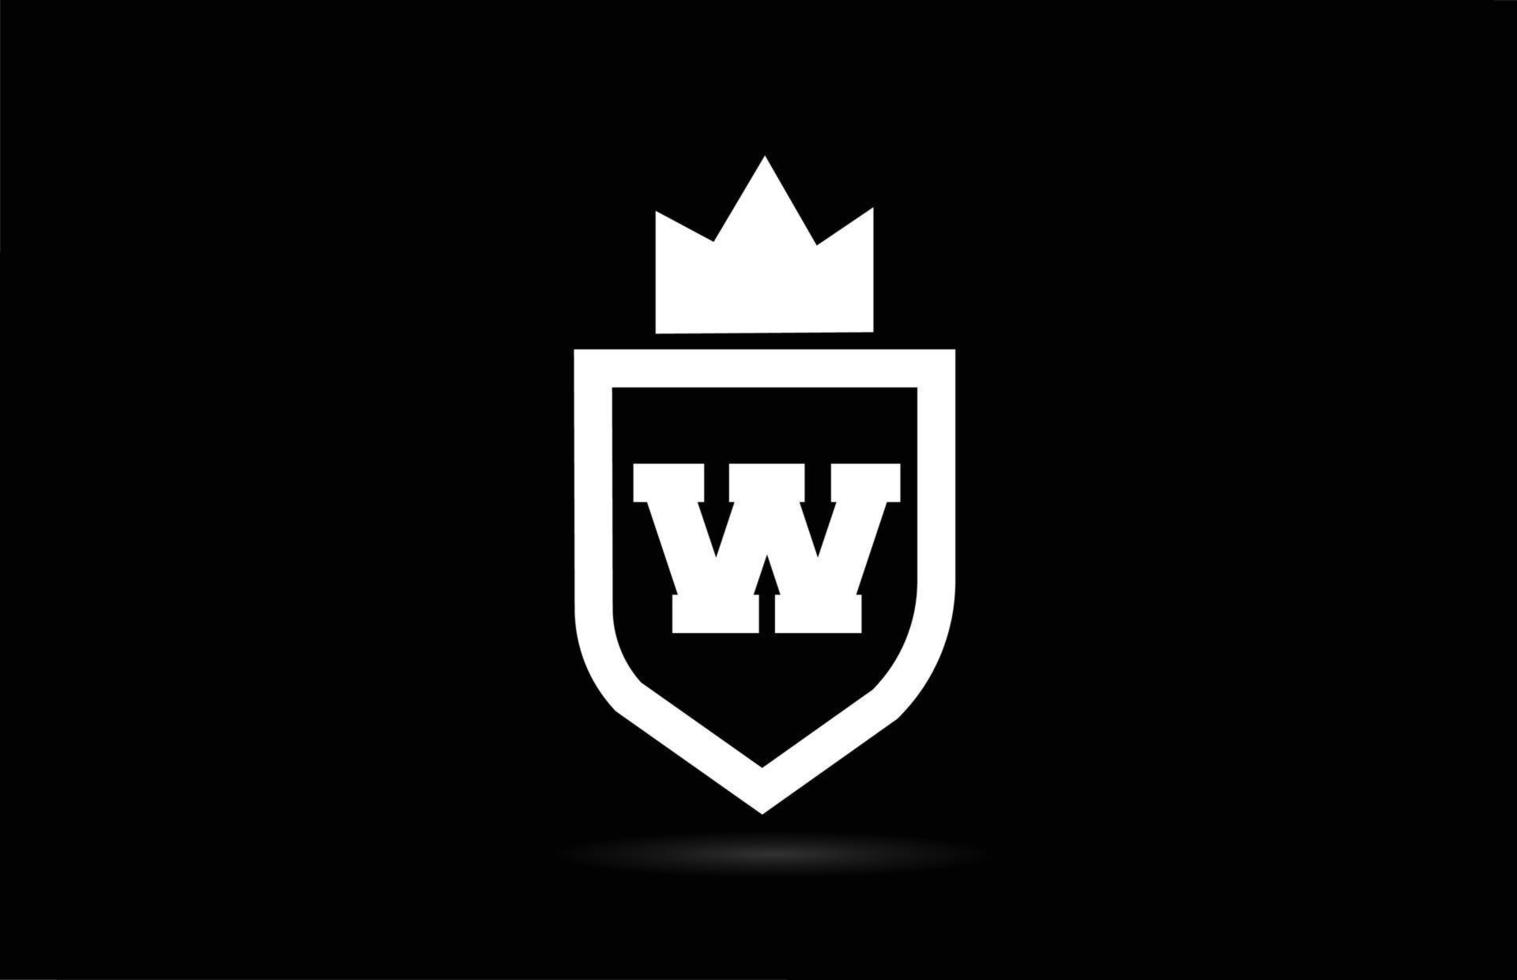 w alfabet letterpictogram logo met koning kroon ontwerp. creatieve sjabloon voor bedrijf en bedrijf in witte en zwarte kleuren vector